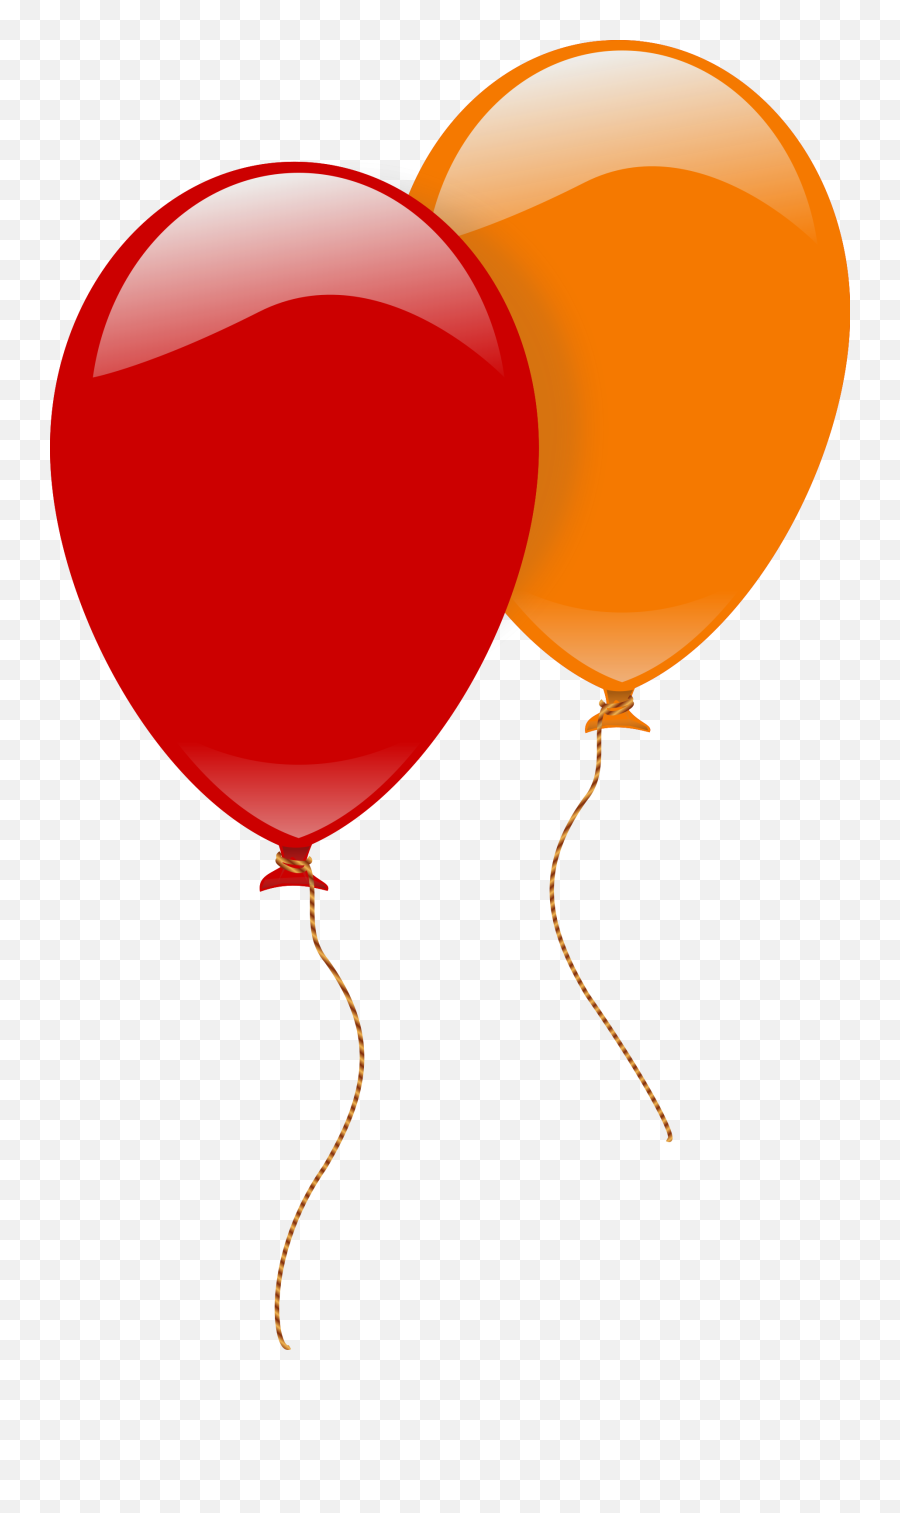 Raffle Clipart Balloon Raffle Balloon Transparent Free For - 2 Balloons Clipart Emoji,Balloons Clipart